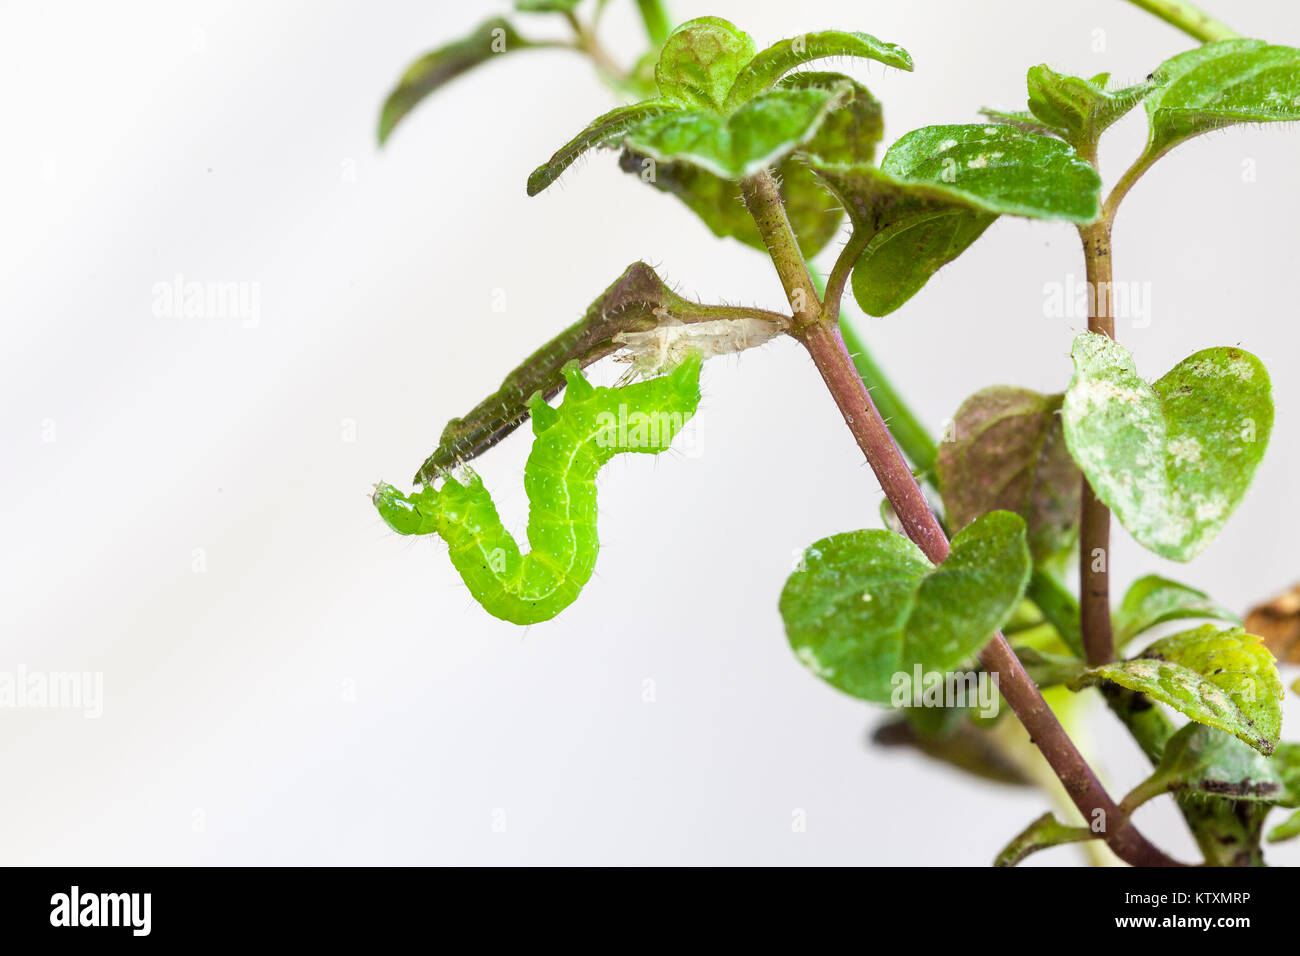 Grünkohl Looper, Trichoplusia ni, Fütterung auf die Blätter einer Topfpflanzen Minze Anlage. Lepidoptera, Noctuidae, mottenlarven Stockfoto